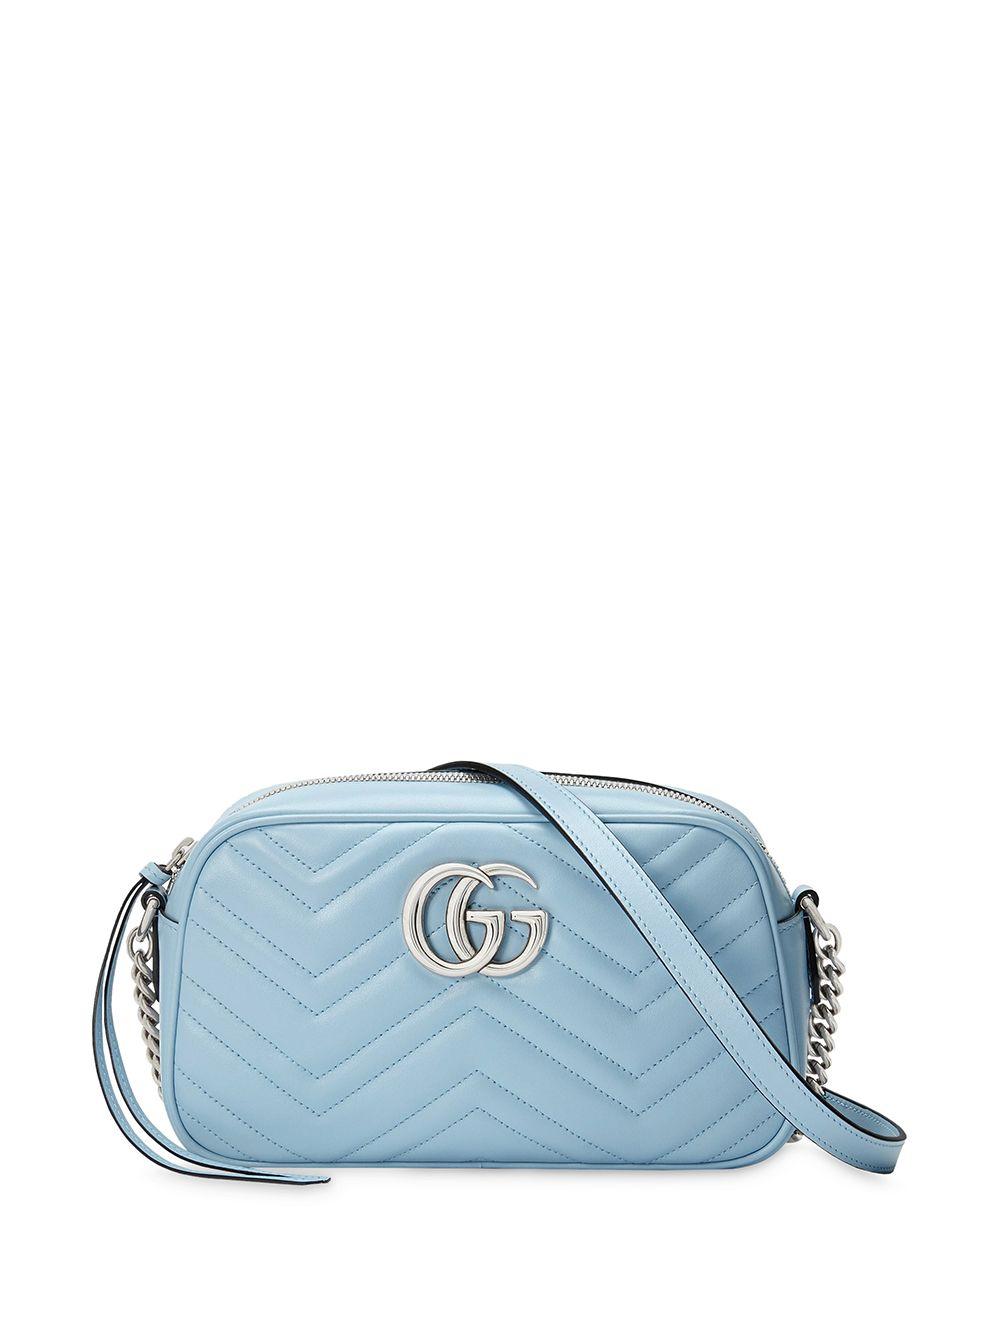 GUCCI Calfskin Matelasse Super Mini GG Marmont Shoulder Bag Porcelain Light  Blue 1101495